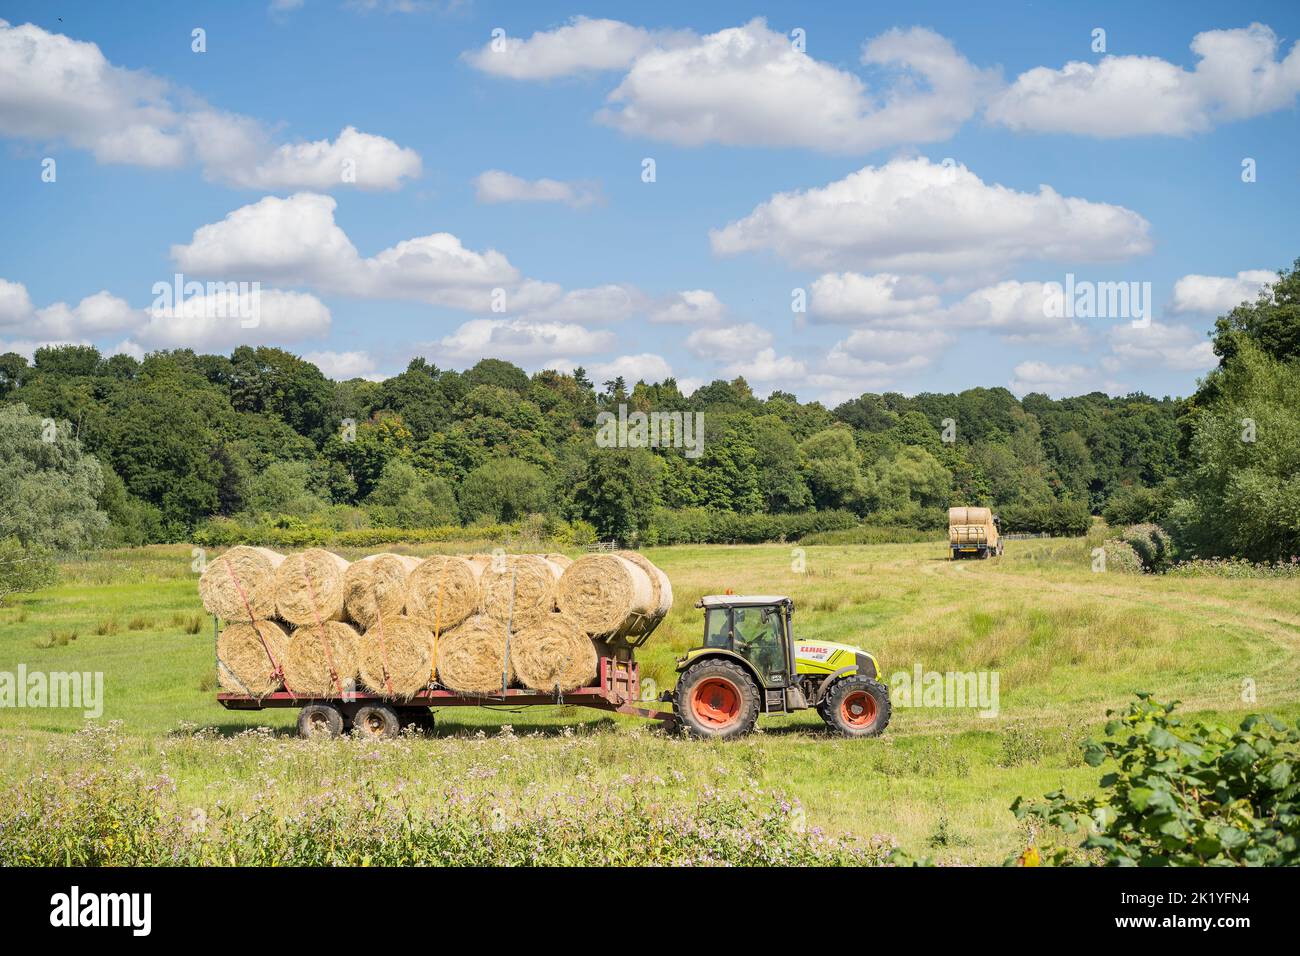 Un tracteur agricole passant dans un champ transportant de grosses balles de foin sur une remorque derrière lui. Ciel bleu et beaucoup de petits nuages blancs. Banque D'Images